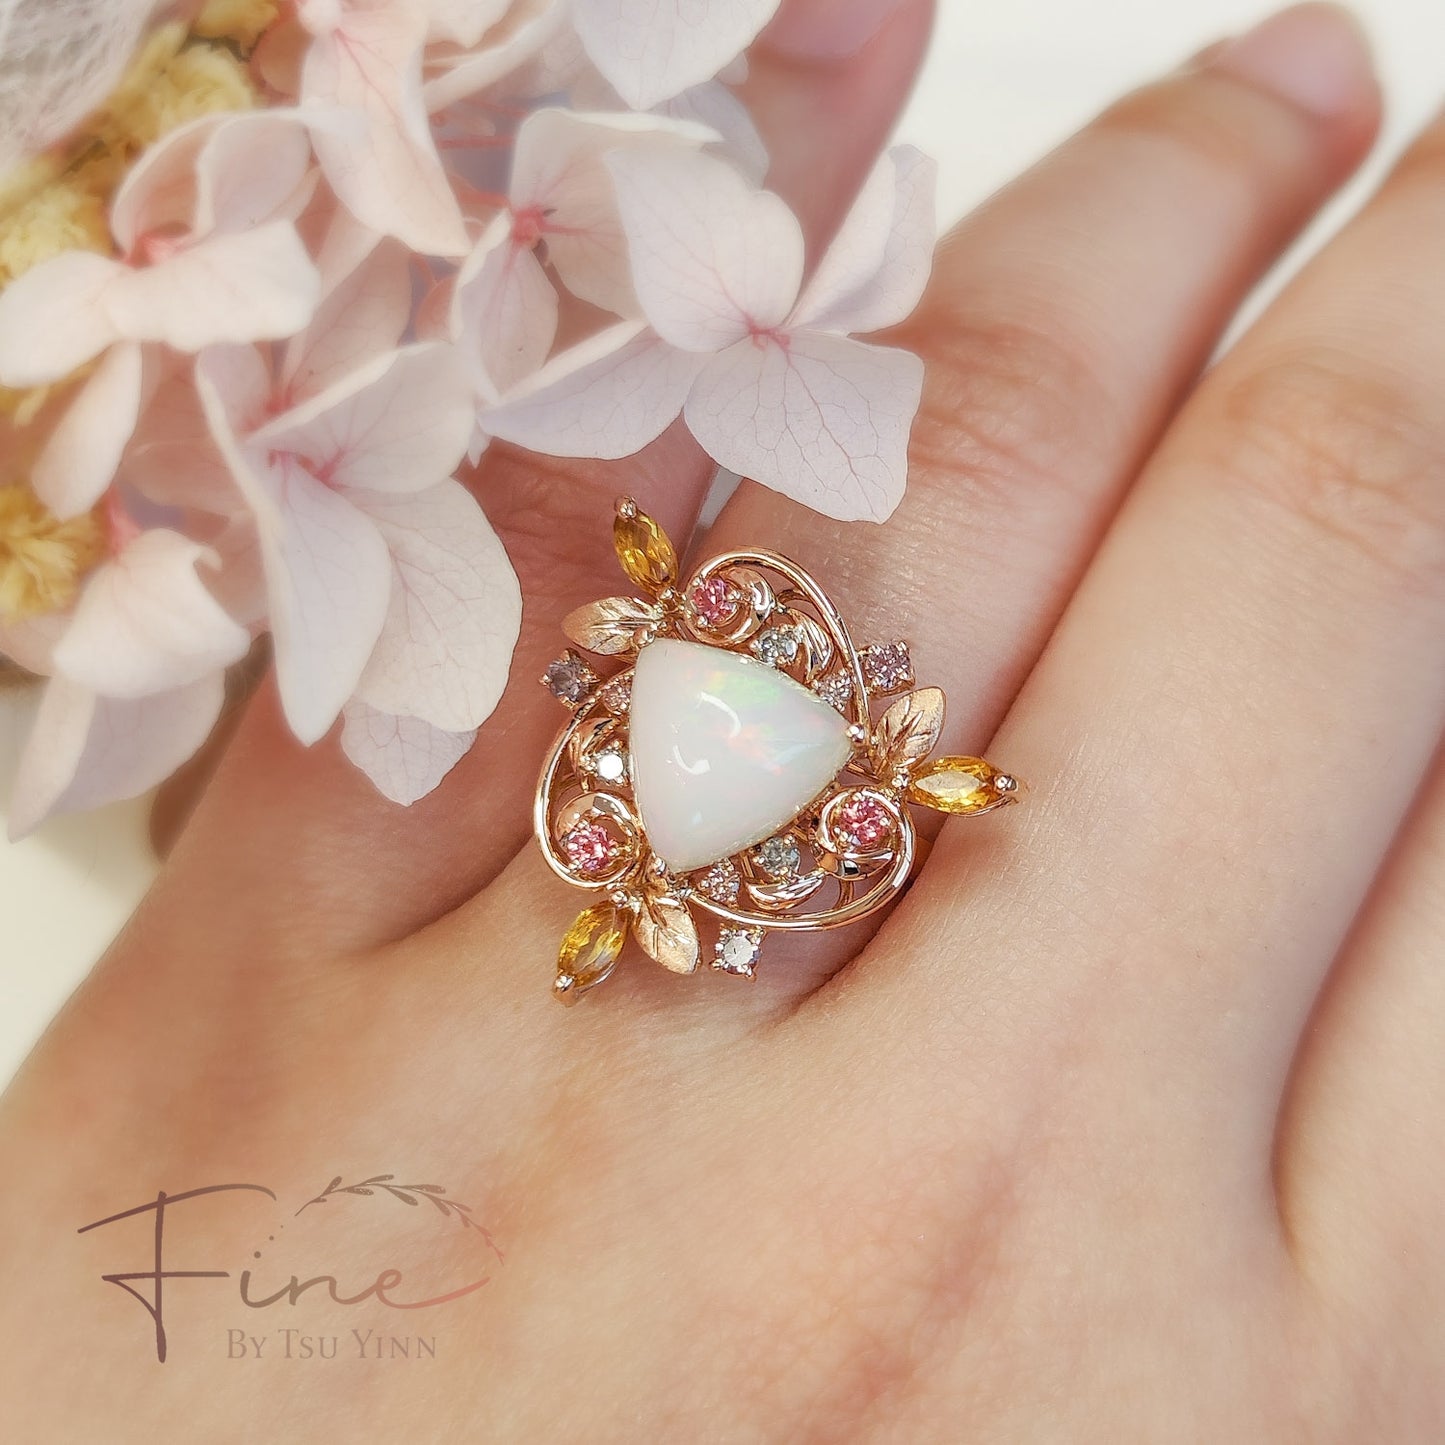 FBTY Sybil Ring in Opal